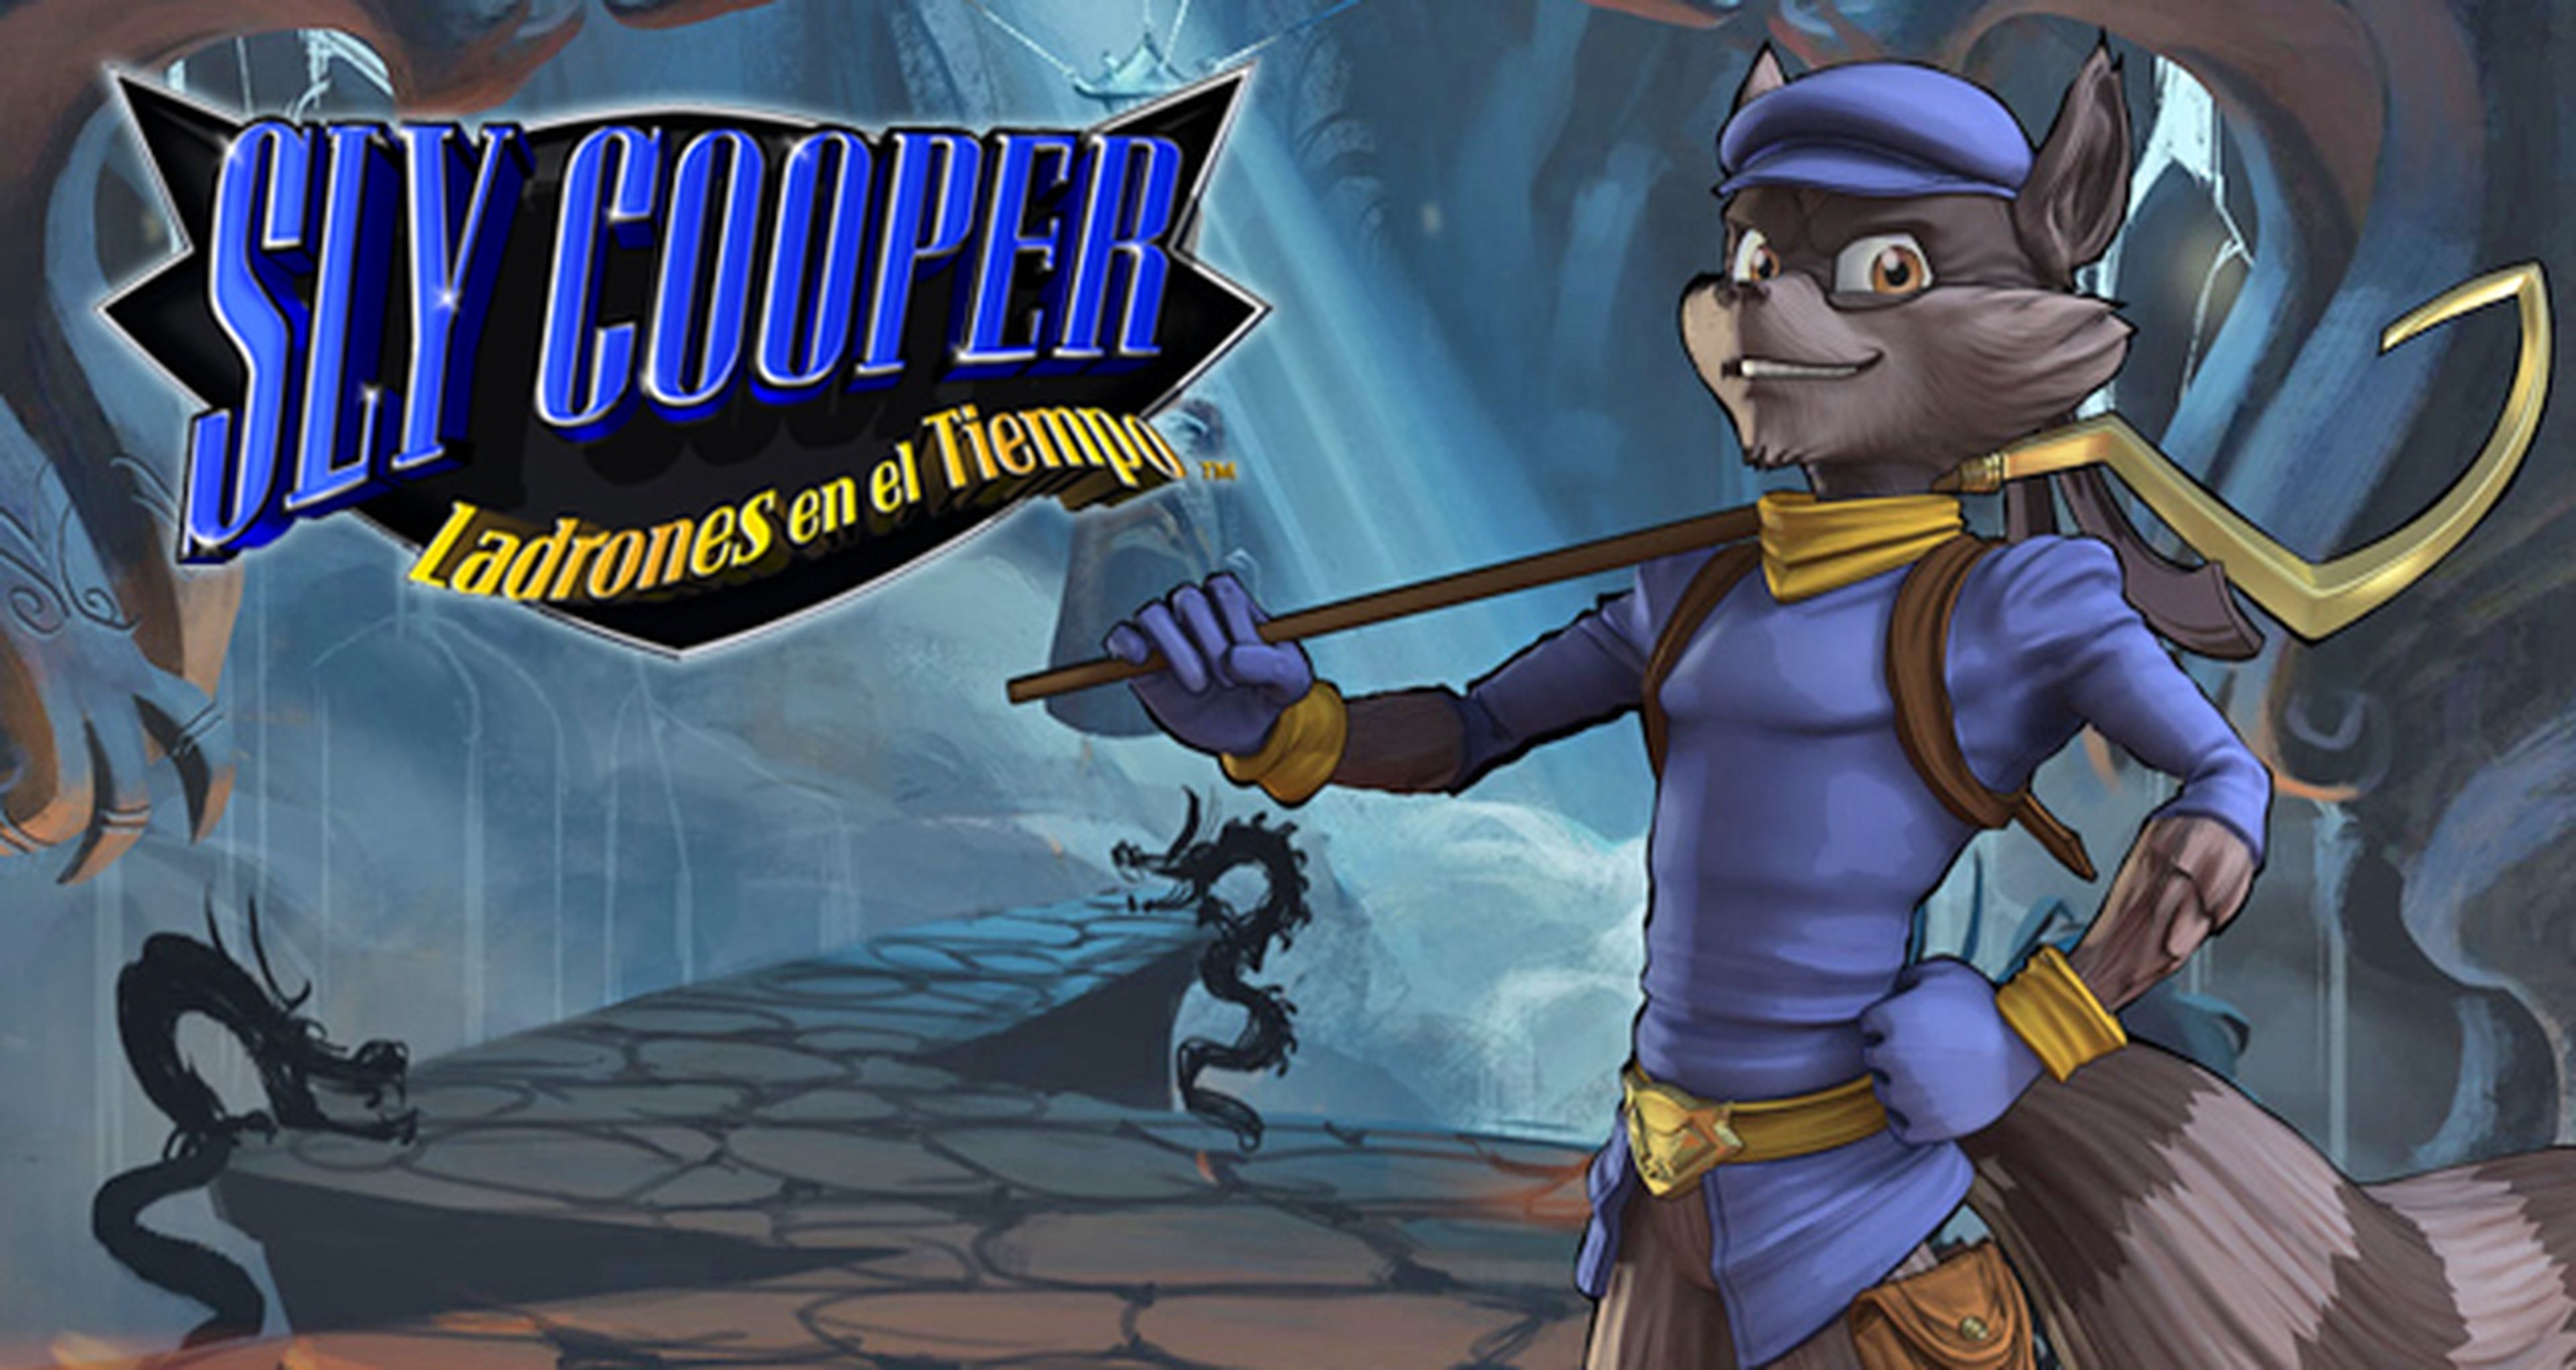 Sly Cooper: Ladrones en el Tiempo